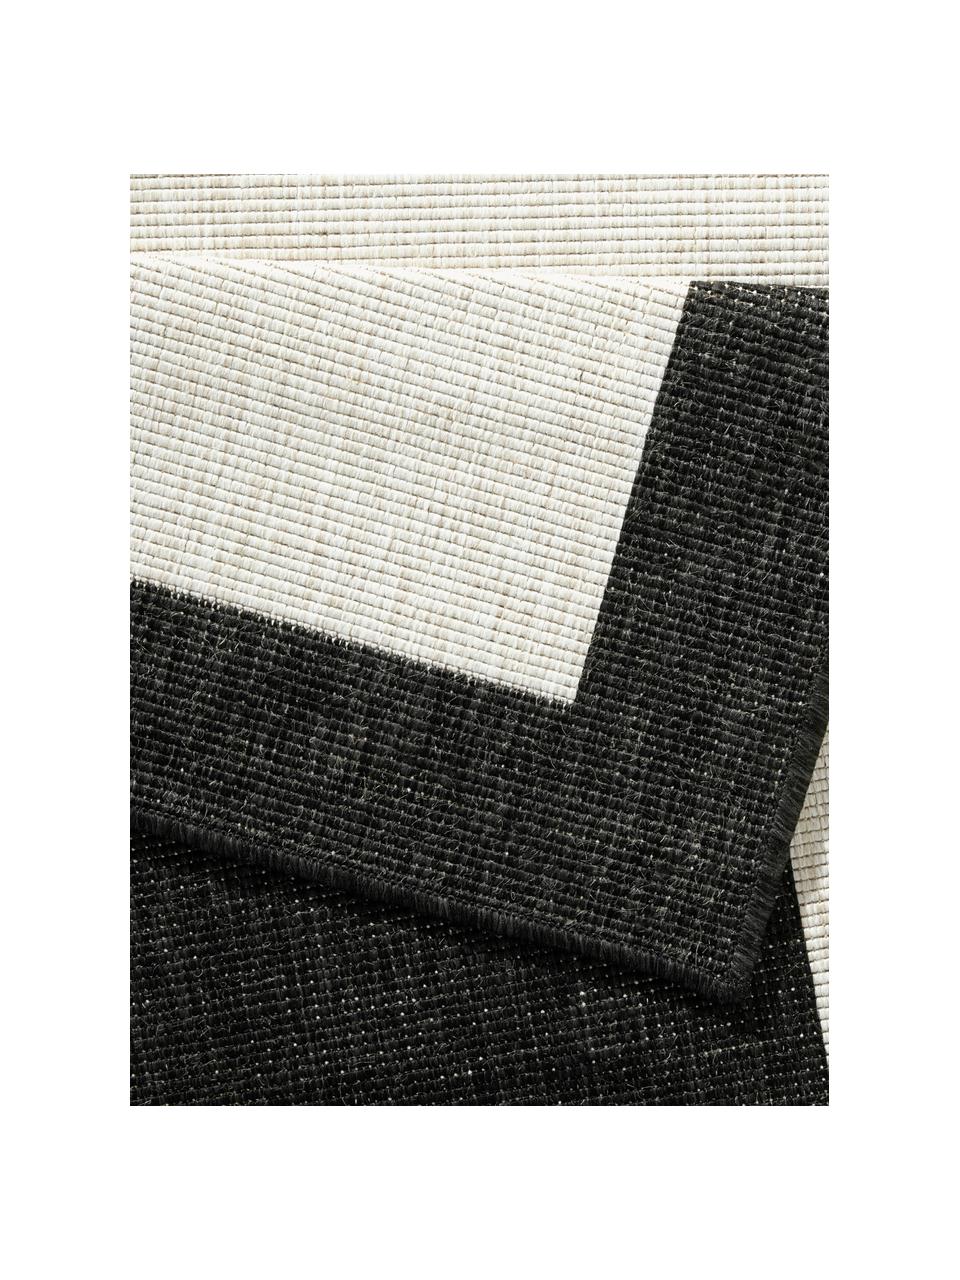 Tappeto reversibile da interno-esterno Panama, Bianco latte, nero, P 150 x L 80 cm